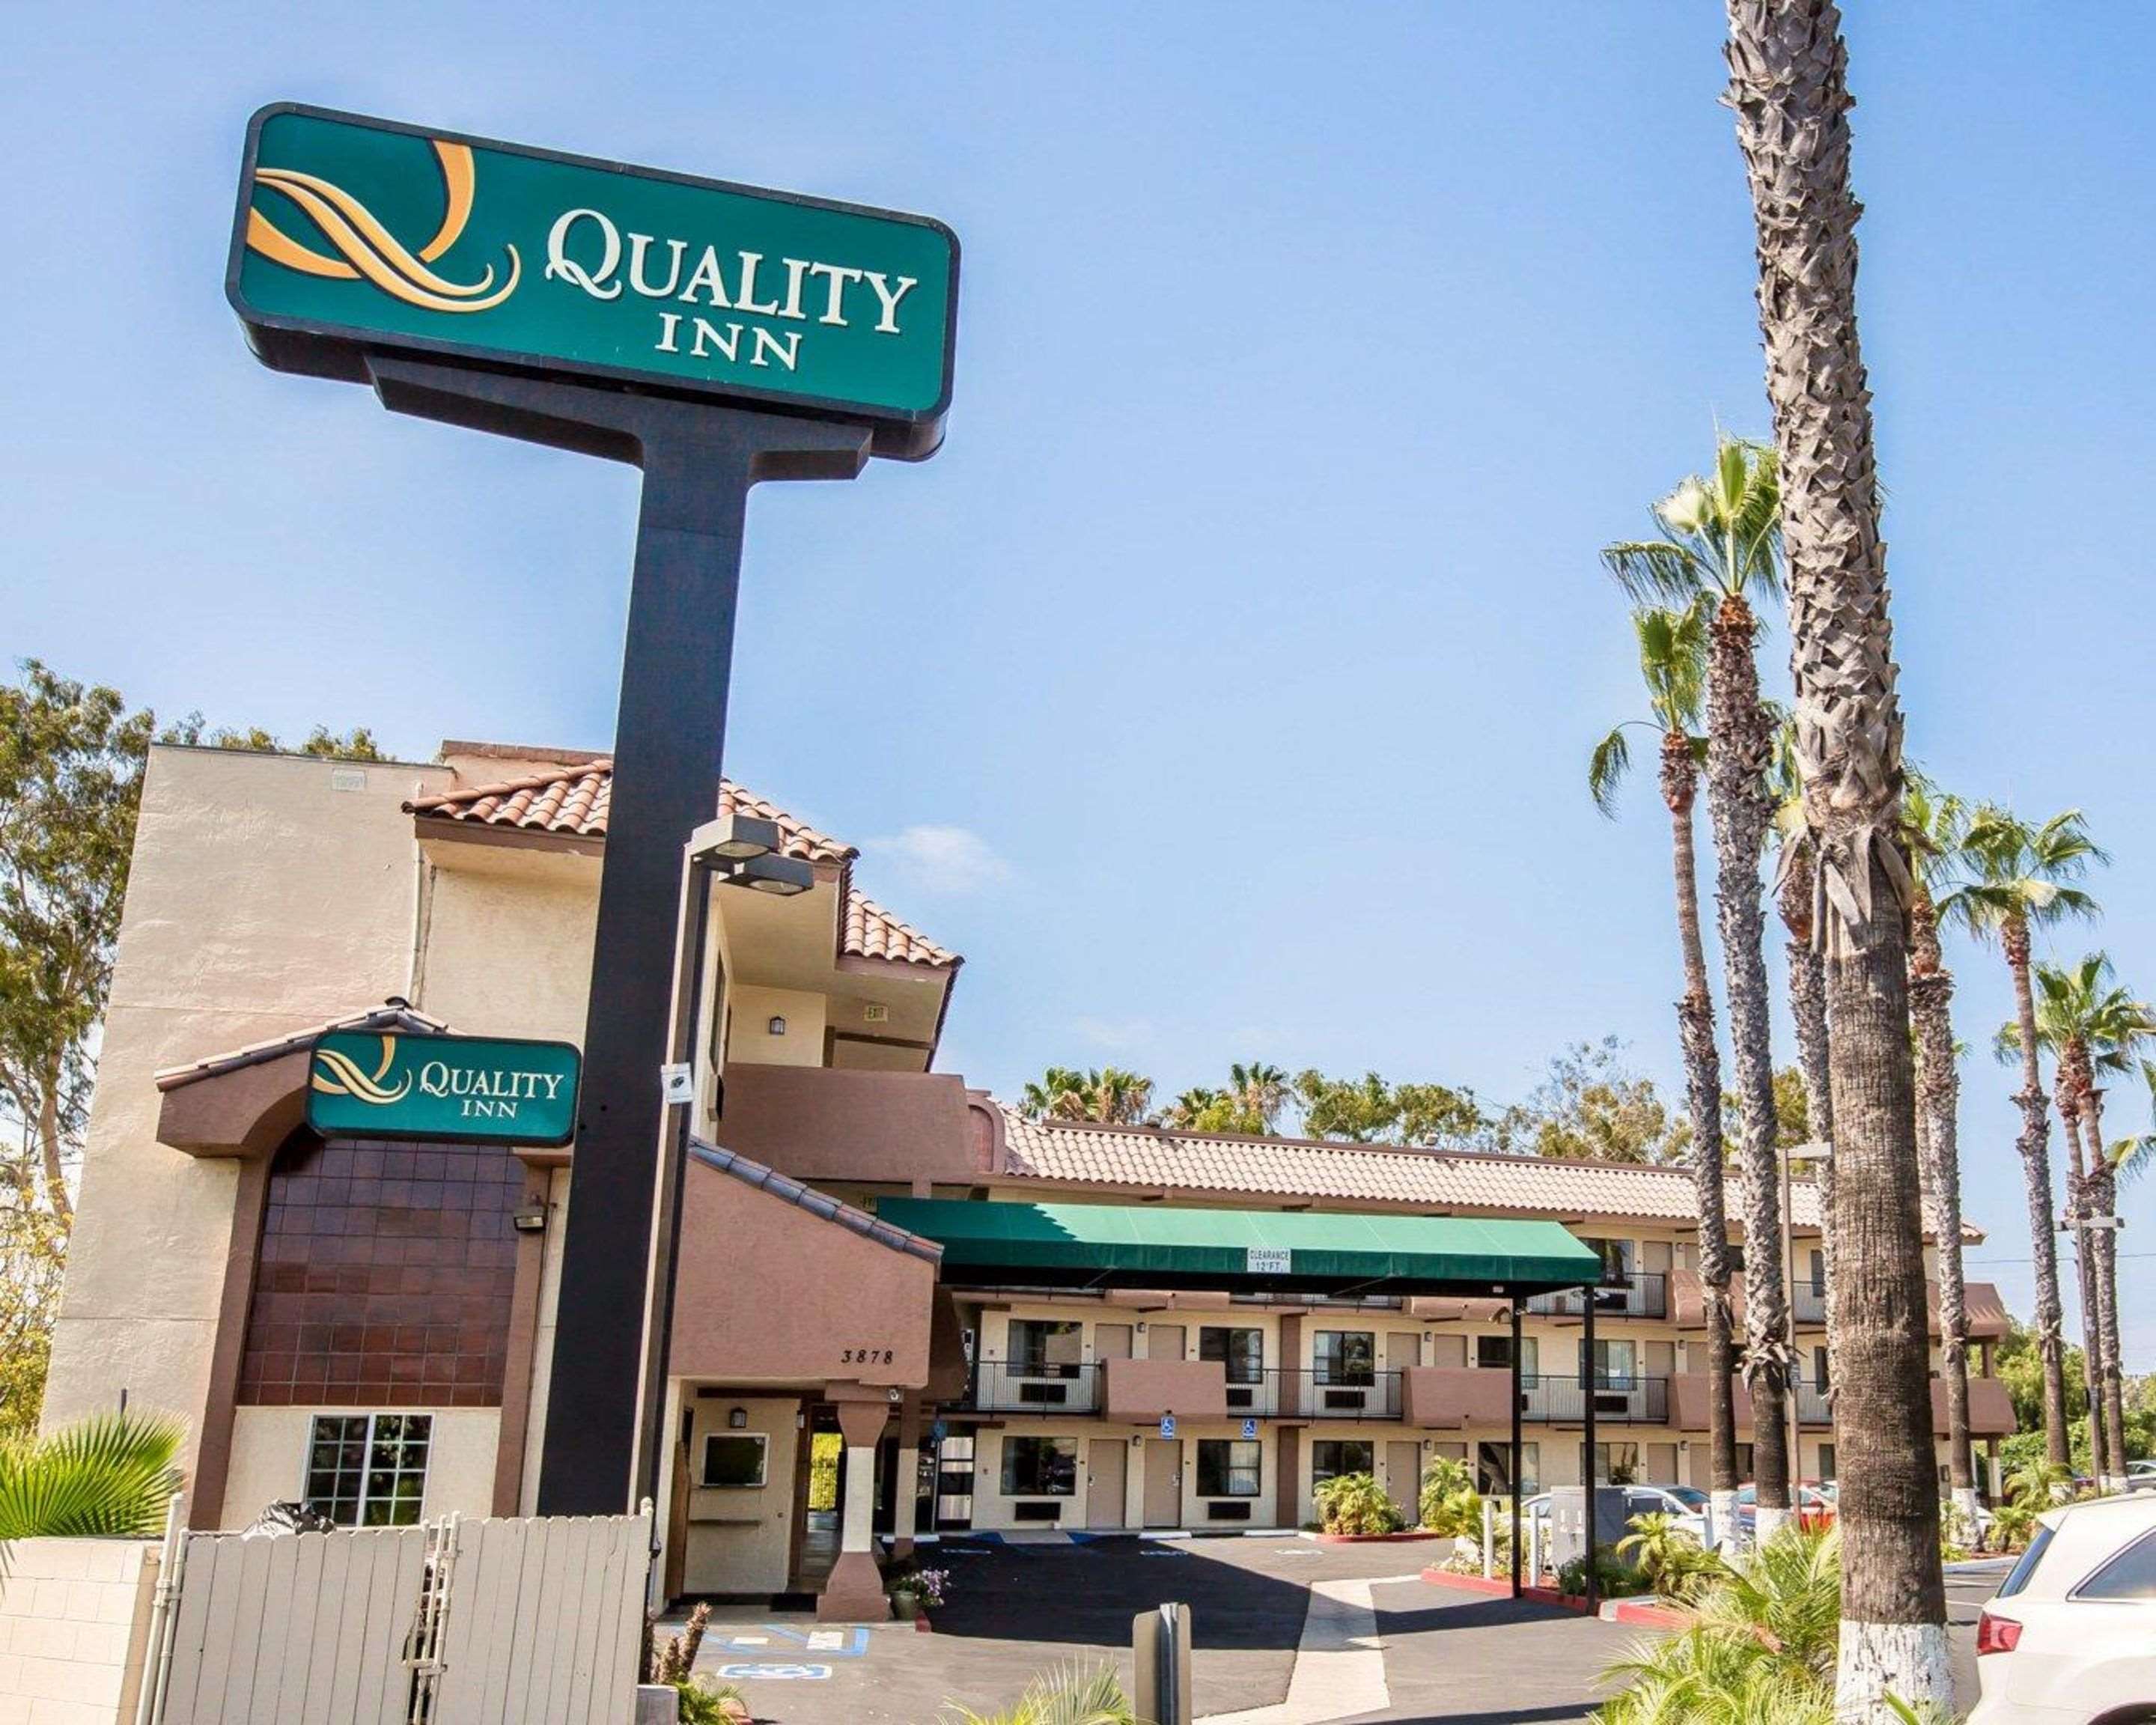 Quality Inn I-5 San Diego Naval Base hotel in San Diego, CA